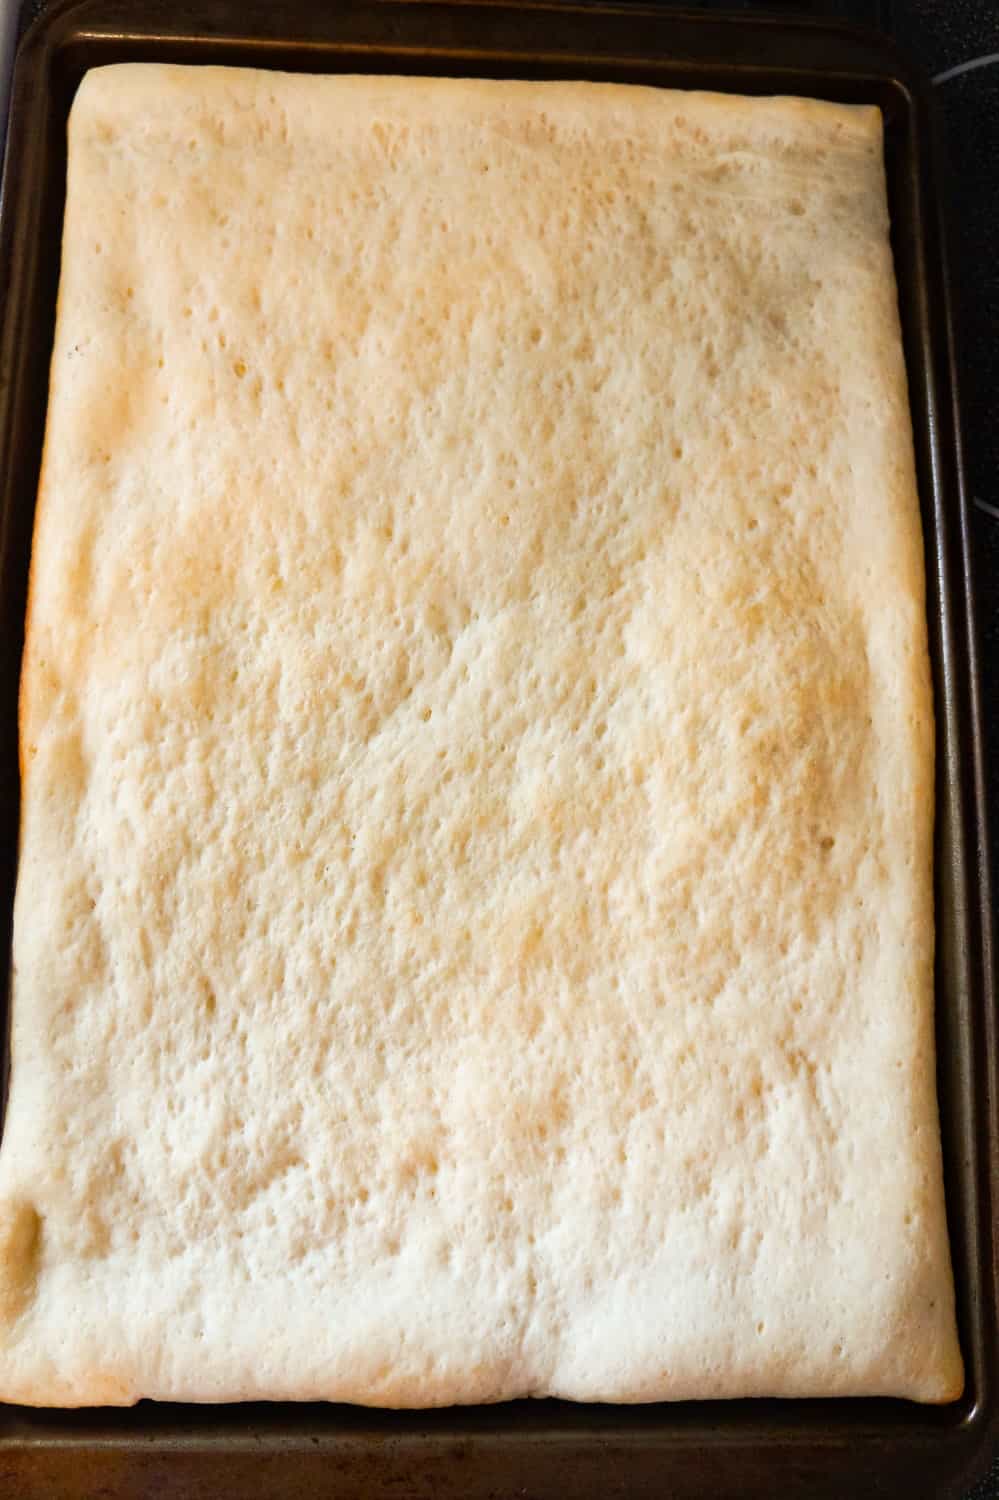 rectangular Pillsbury pizza crust after pre baking